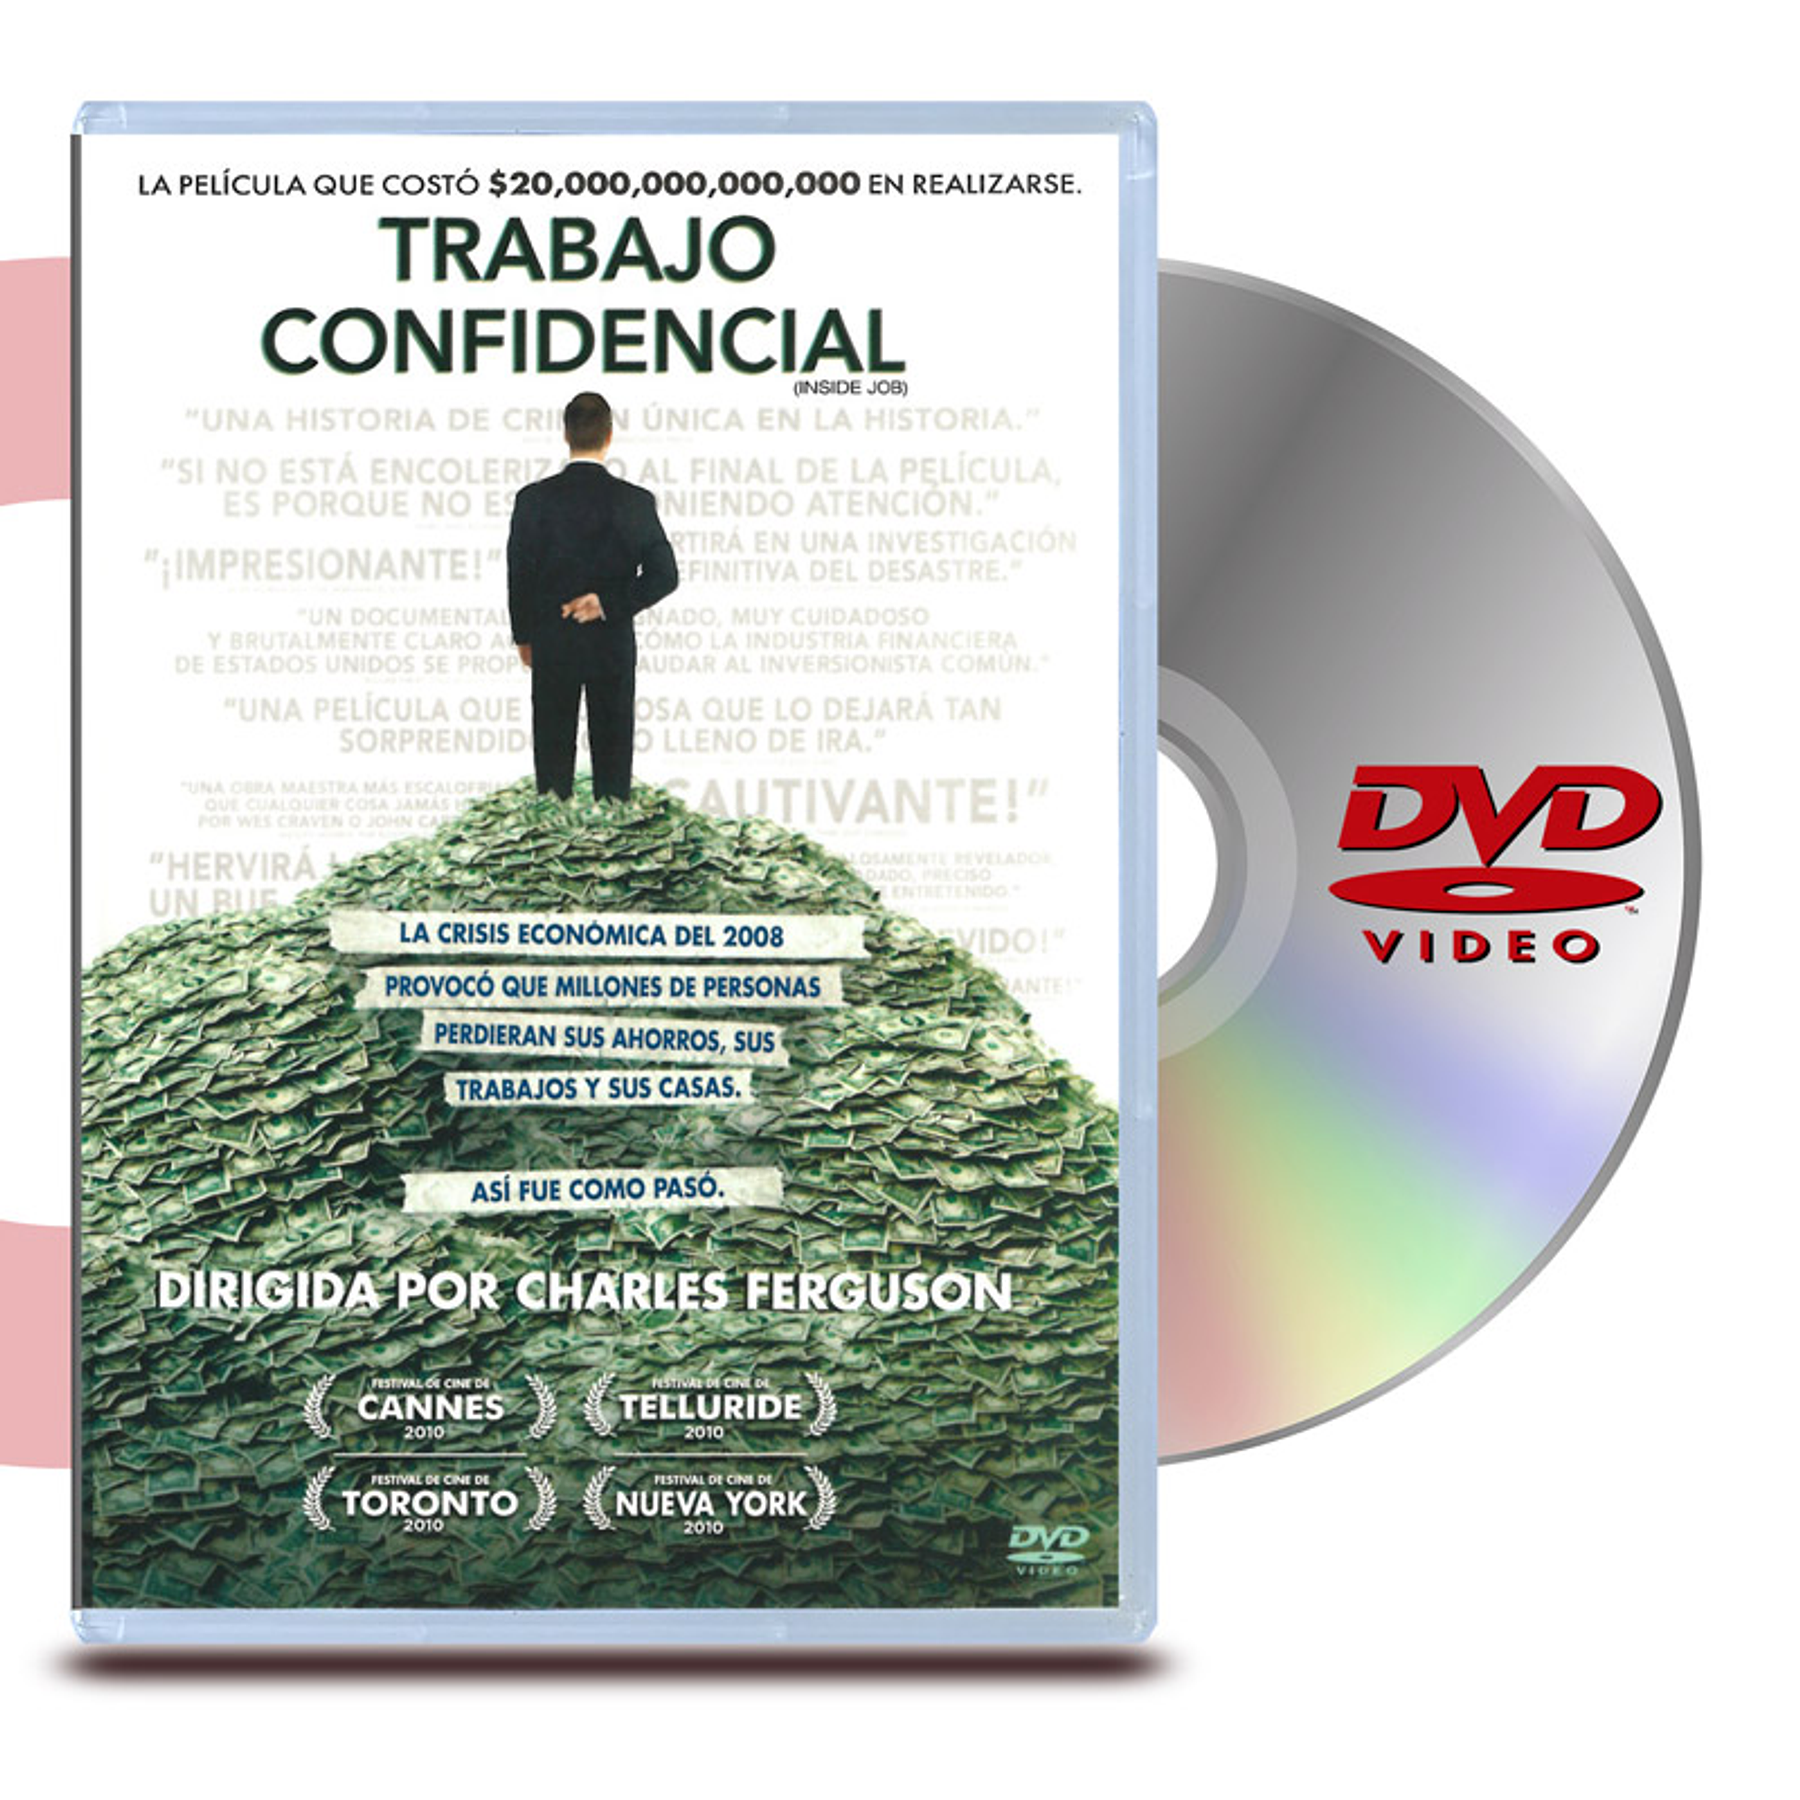 DVD TRABAJO CONFIDENCIAL